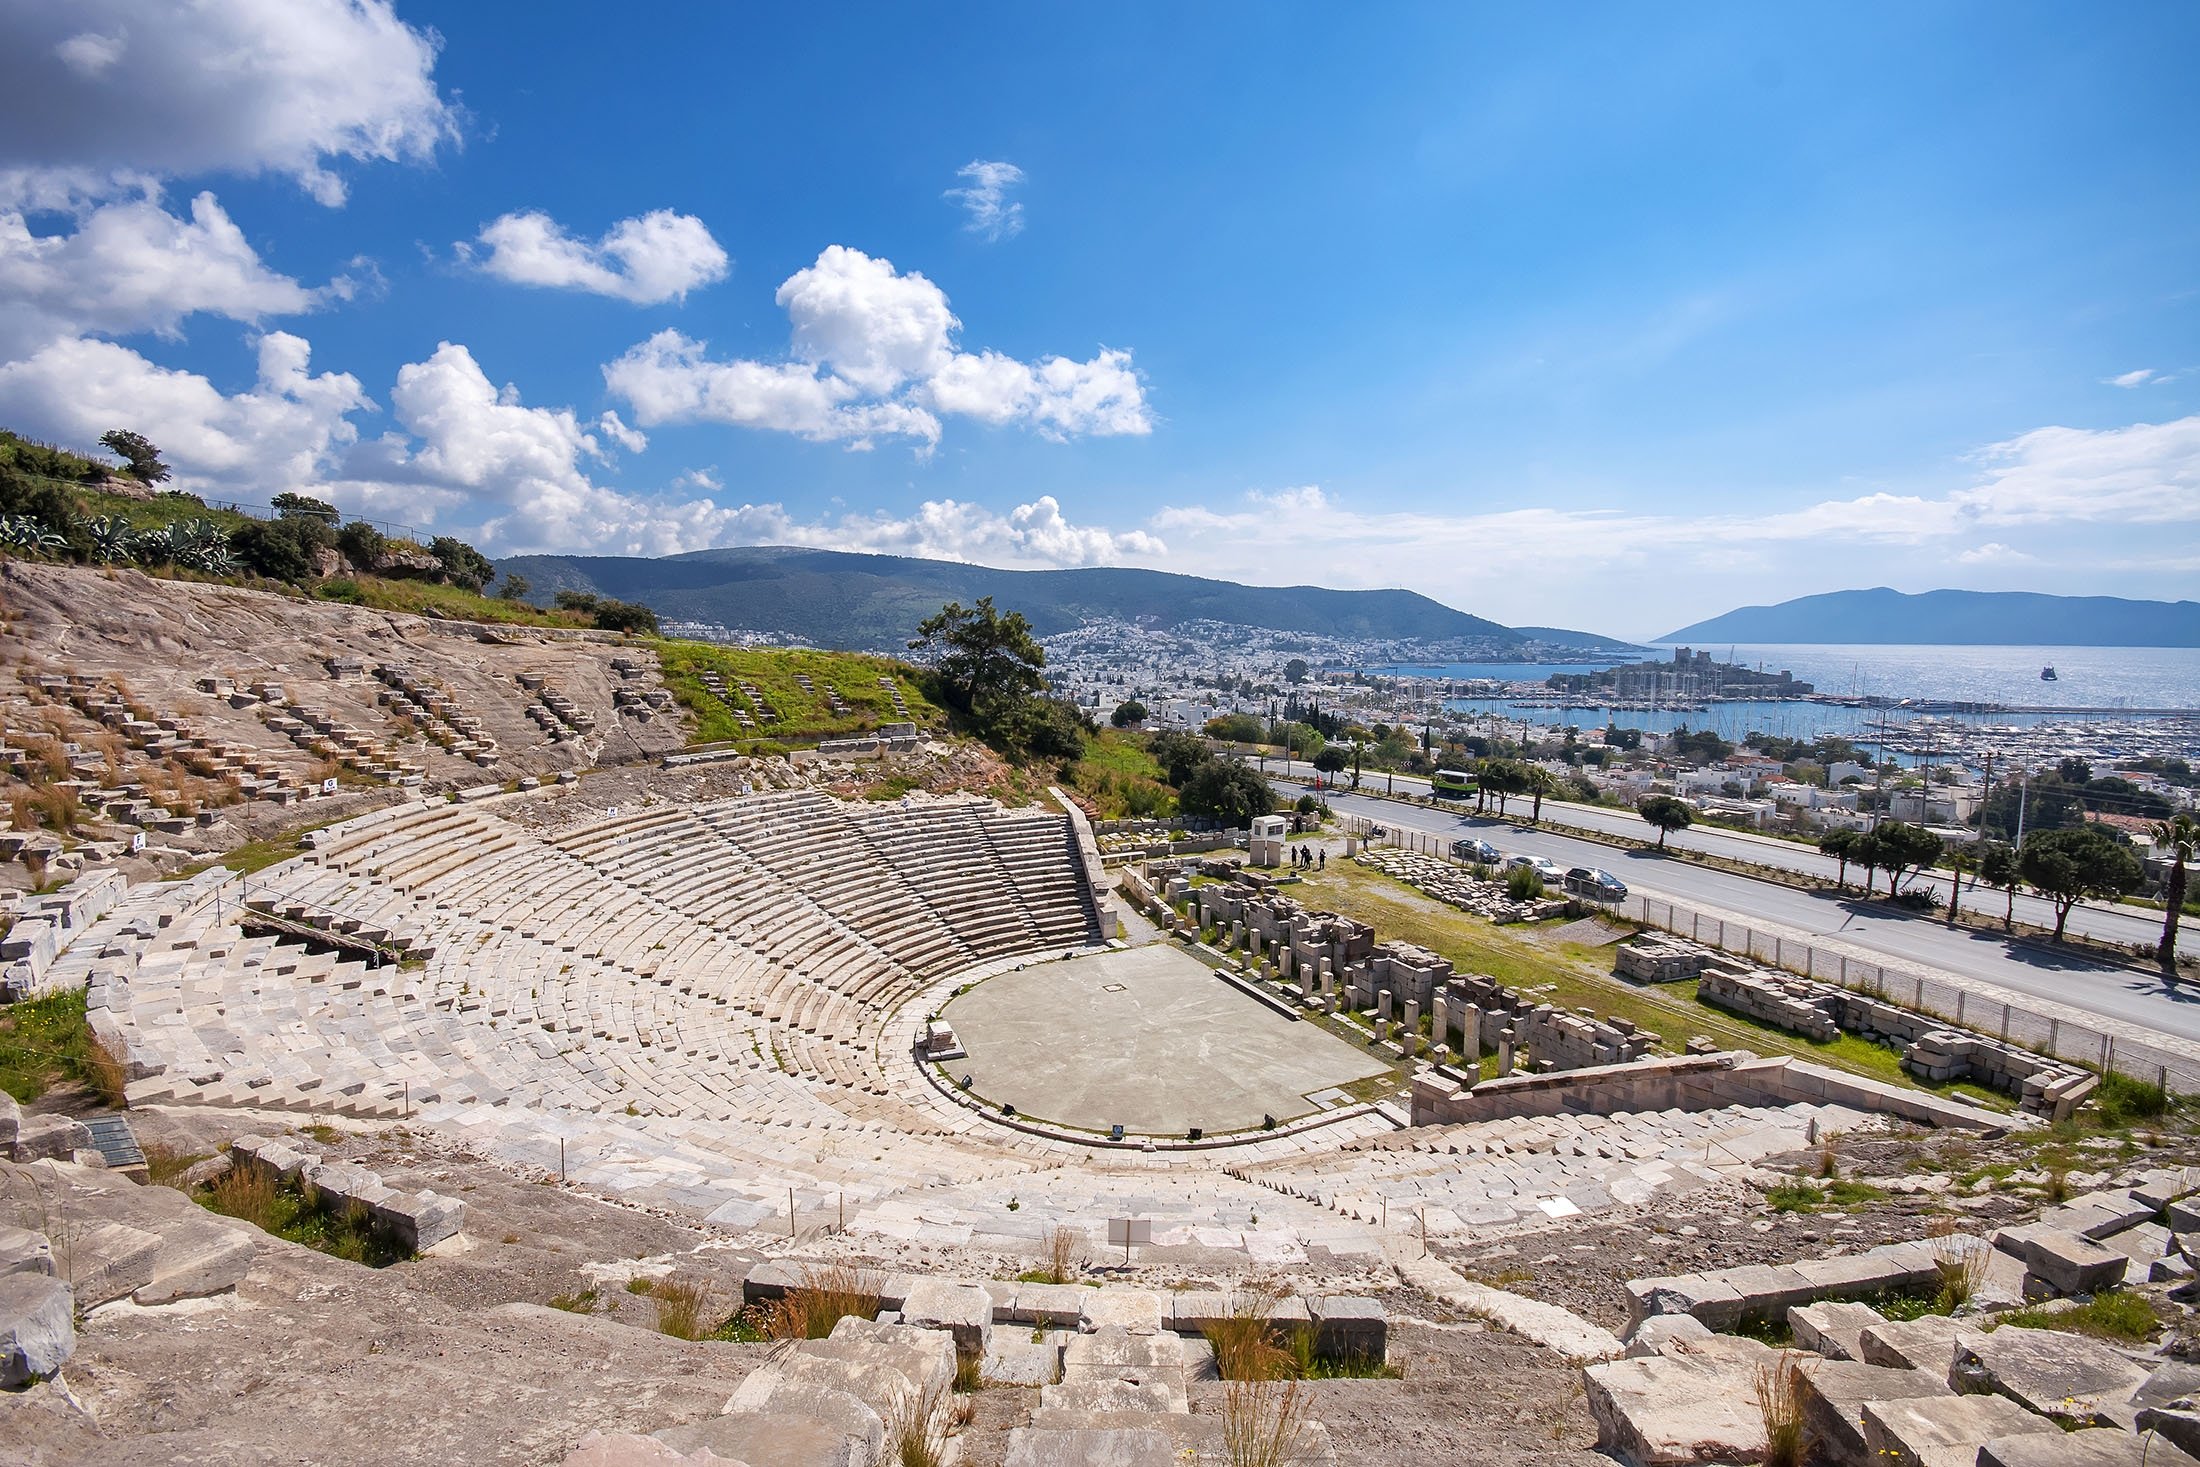 Teater antik Yunani-Romawi atau dikenal sebagai Teater di Halicarnassus, dibangun pada abad keempat dan menghadap ke teluk dan kastil Bodrum.  (Foto Shutterstock)